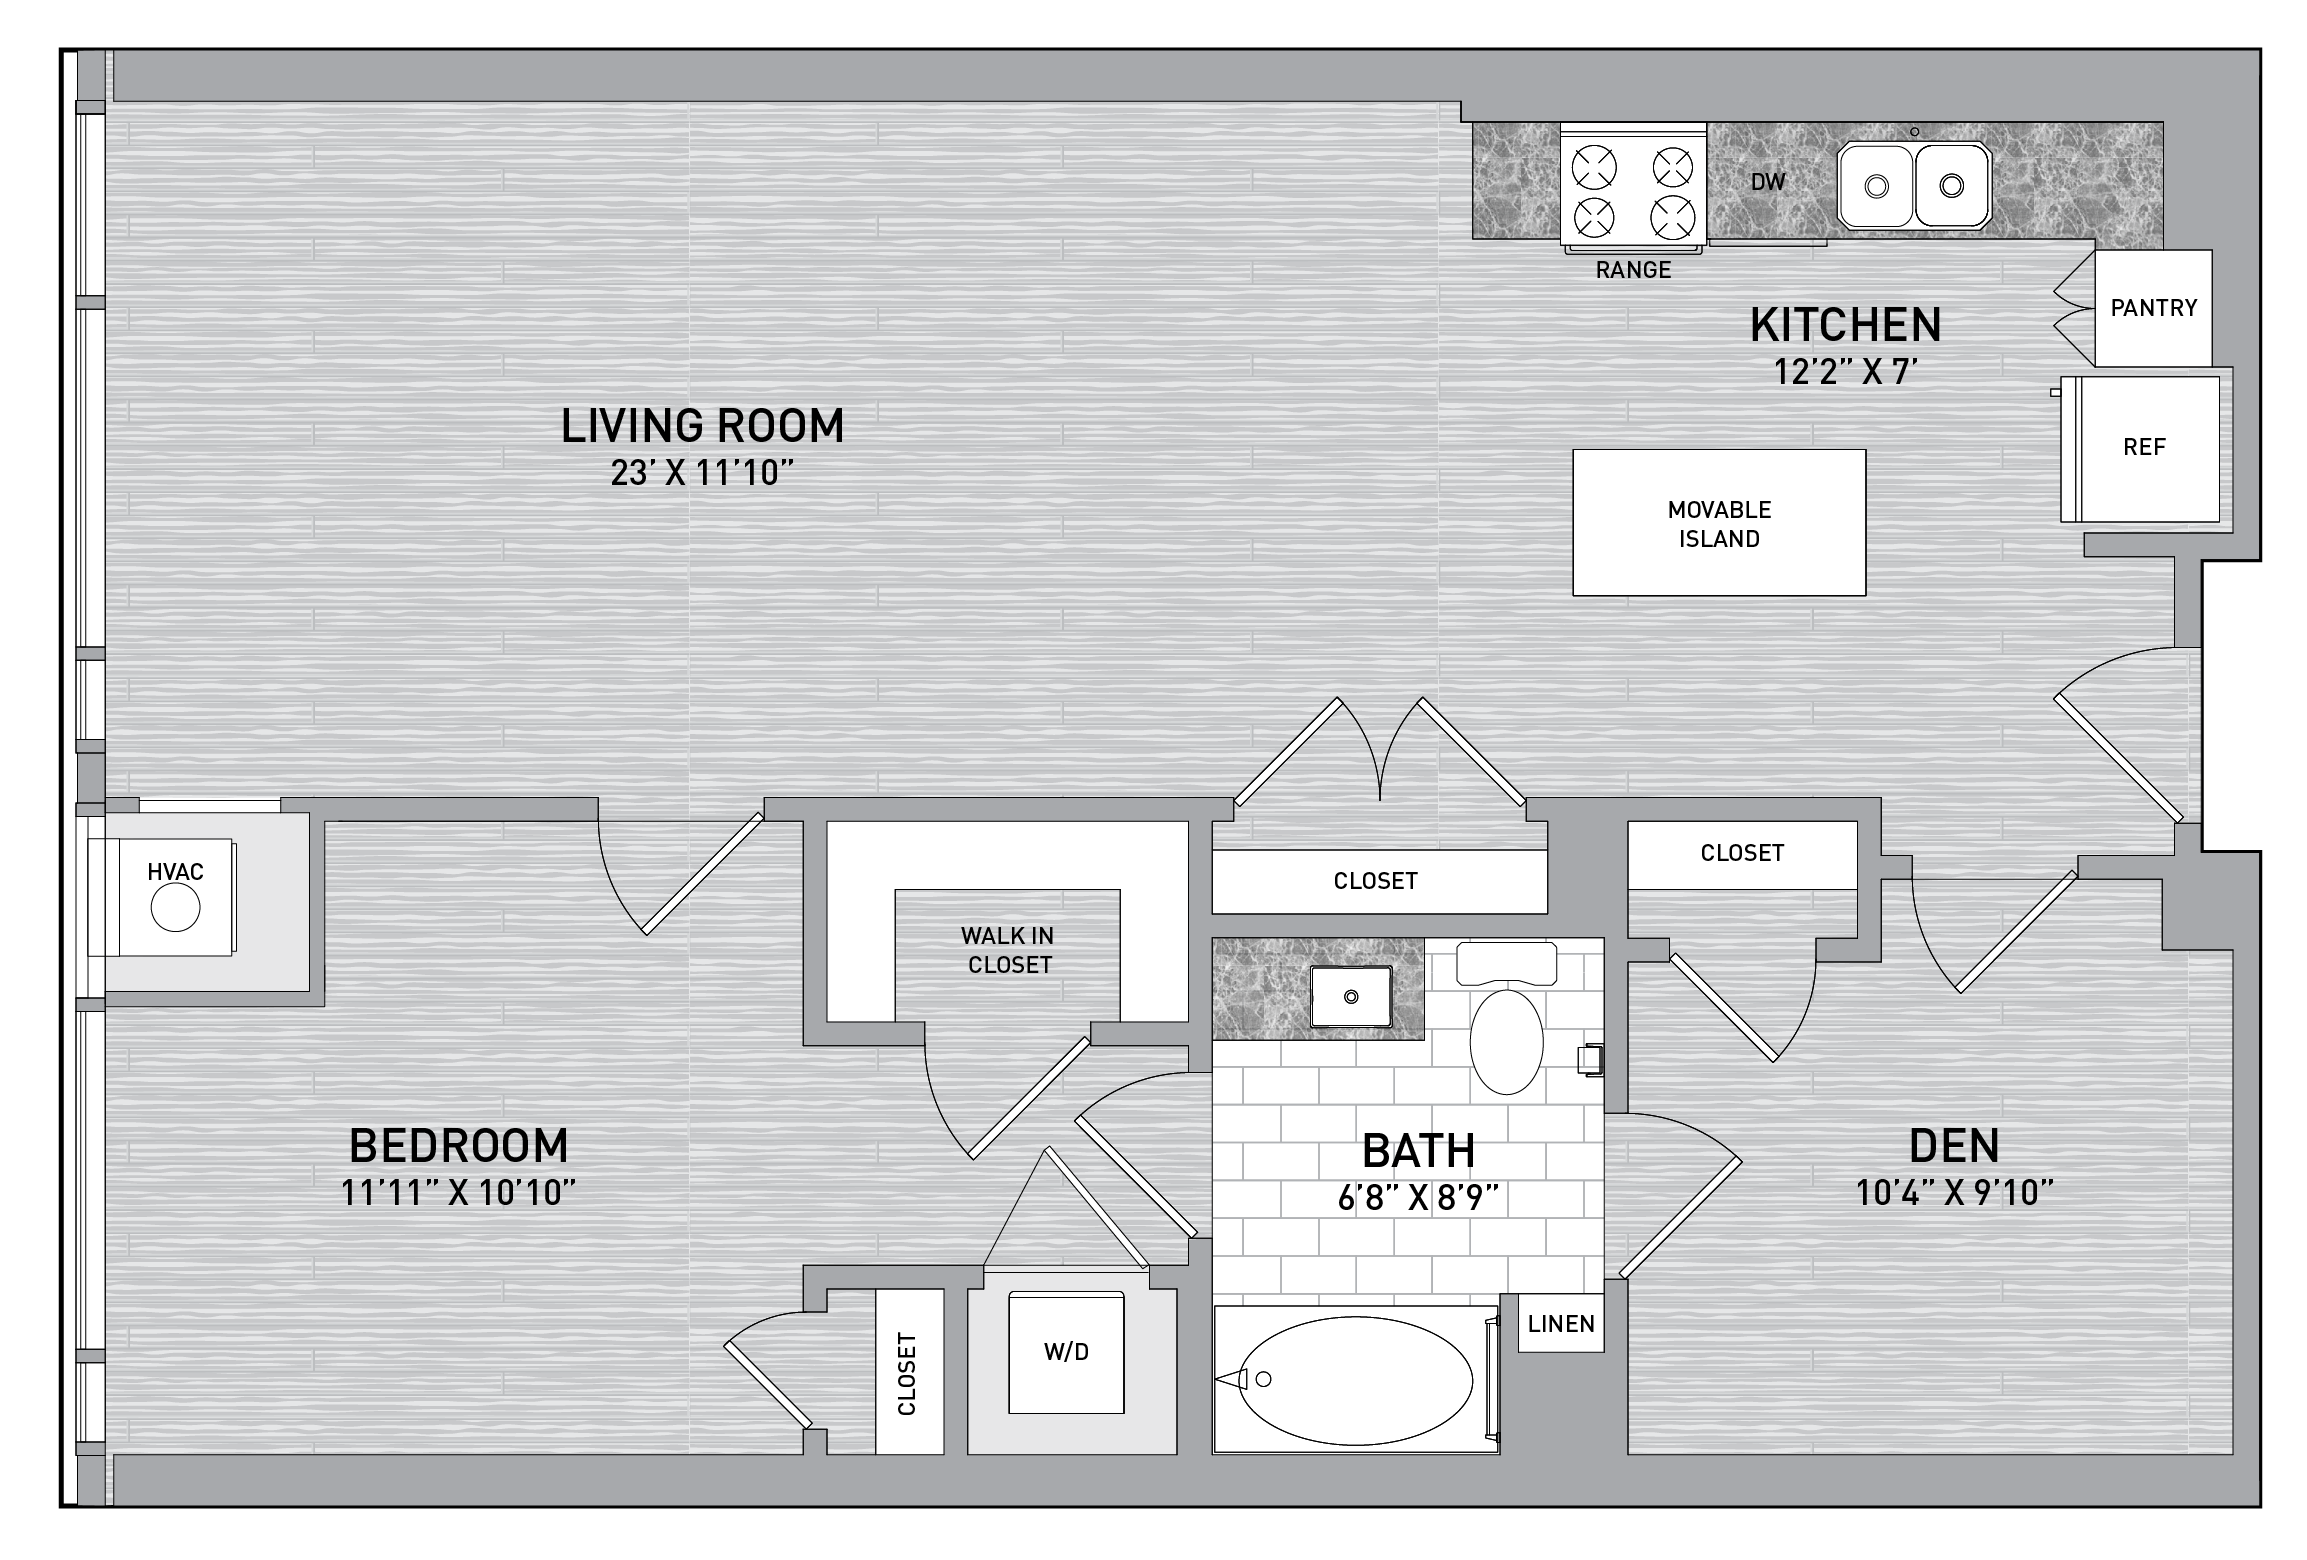 floorplan image of unit id 0409